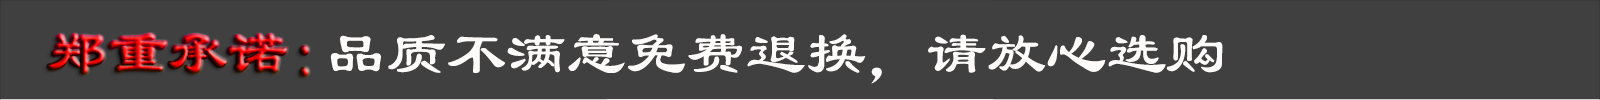 广东思威特智能科技股份有限公司